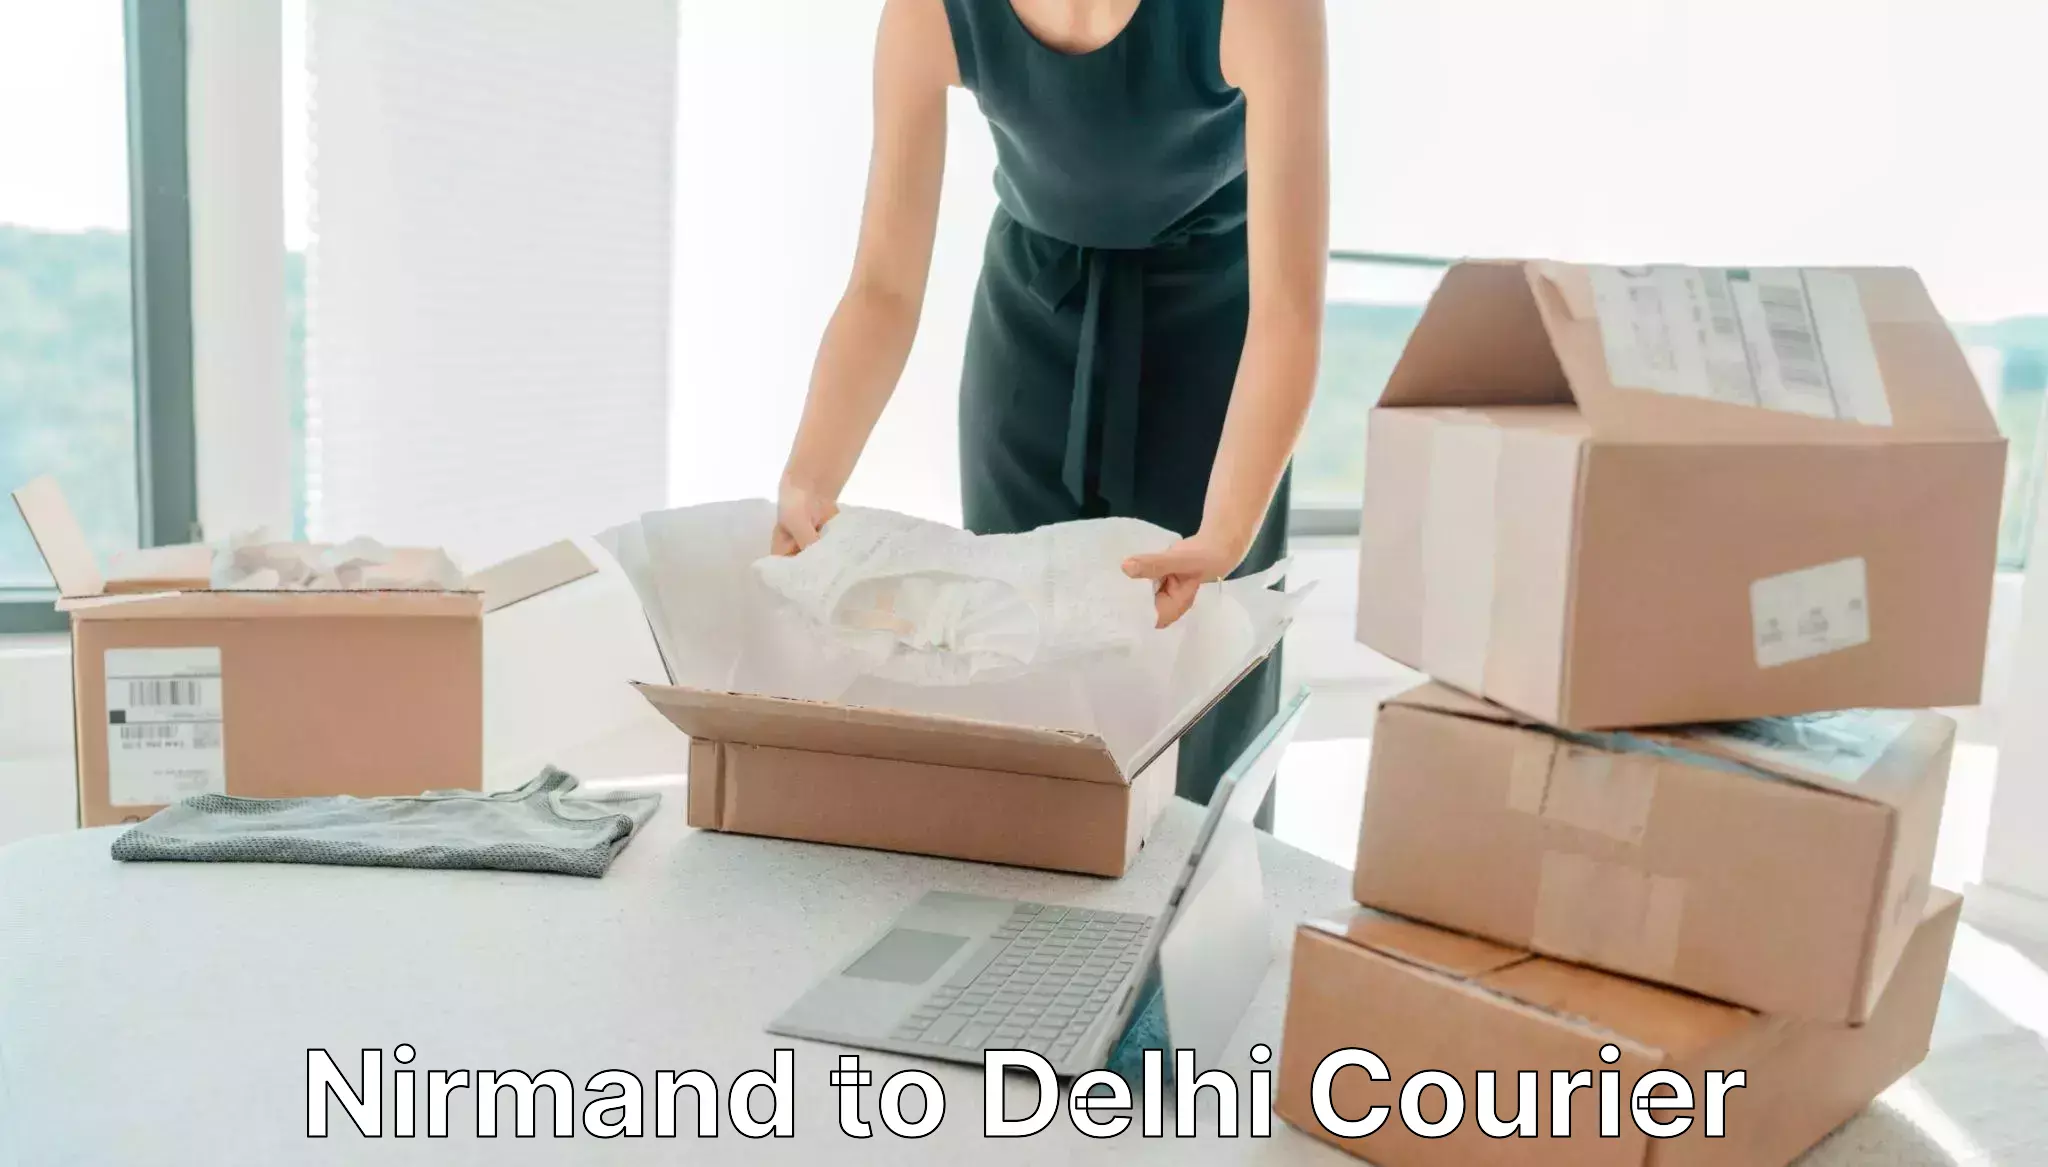 Cargo delivery service Nirmand to Delhi